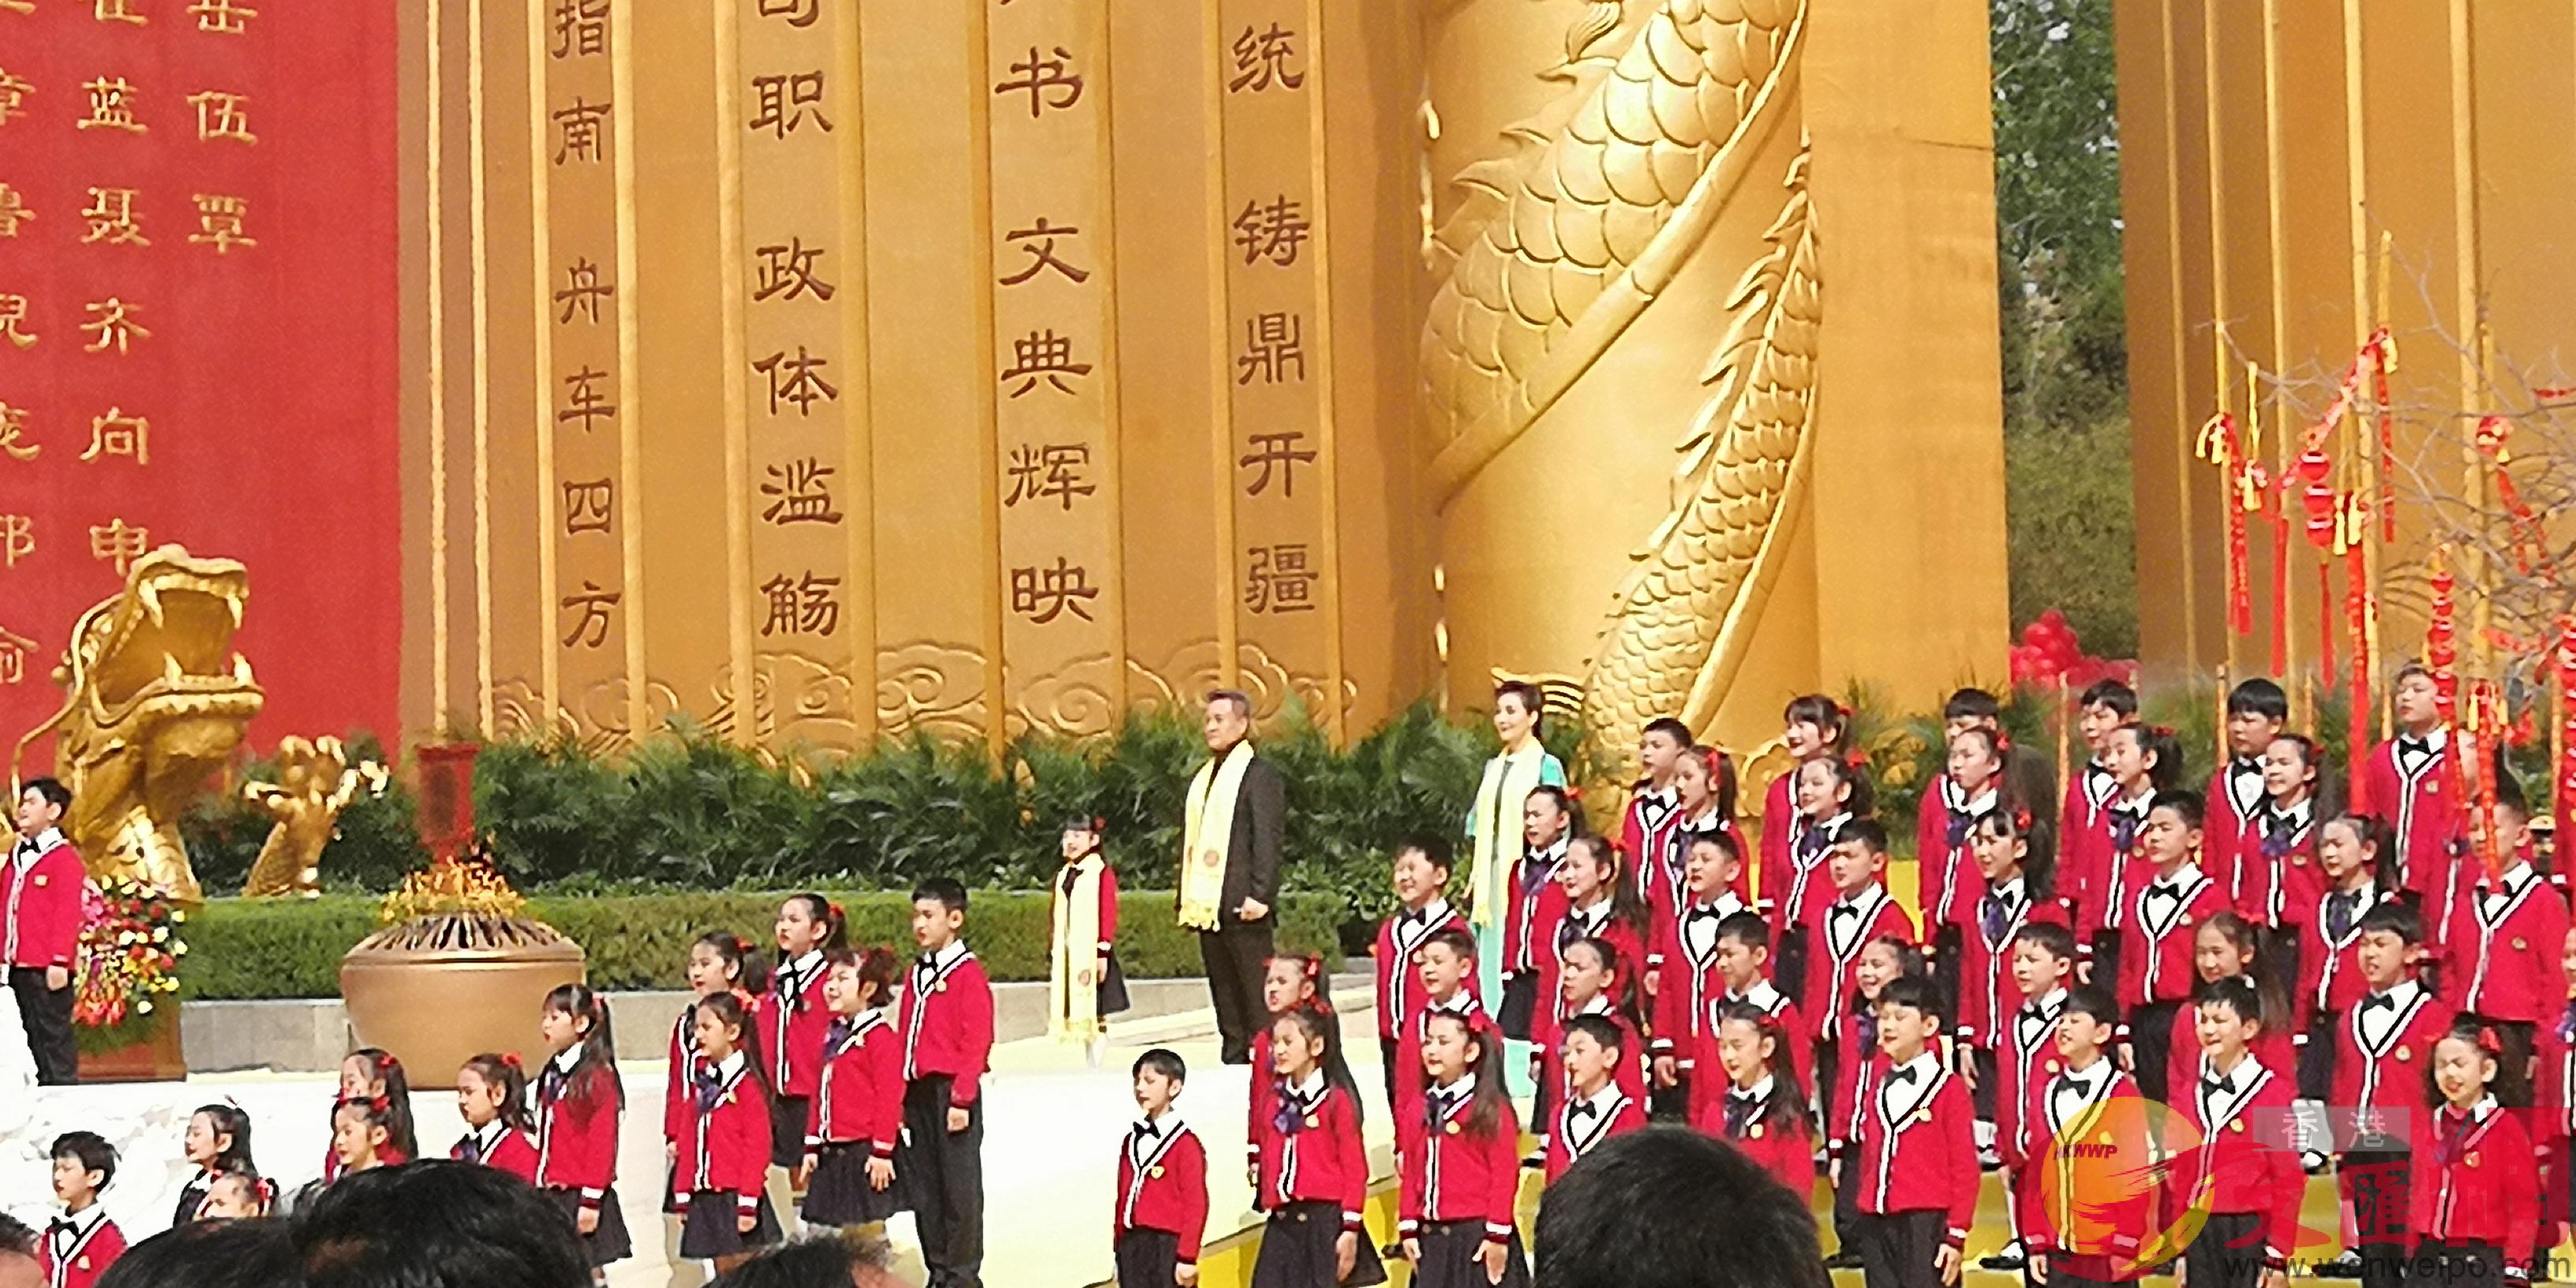 著名歌唱家閻維文領唱A成人合唱隊B童聲少兒合唱隊跟隨音樂齊聲高唱m黃帝頌n]馮雷攝^